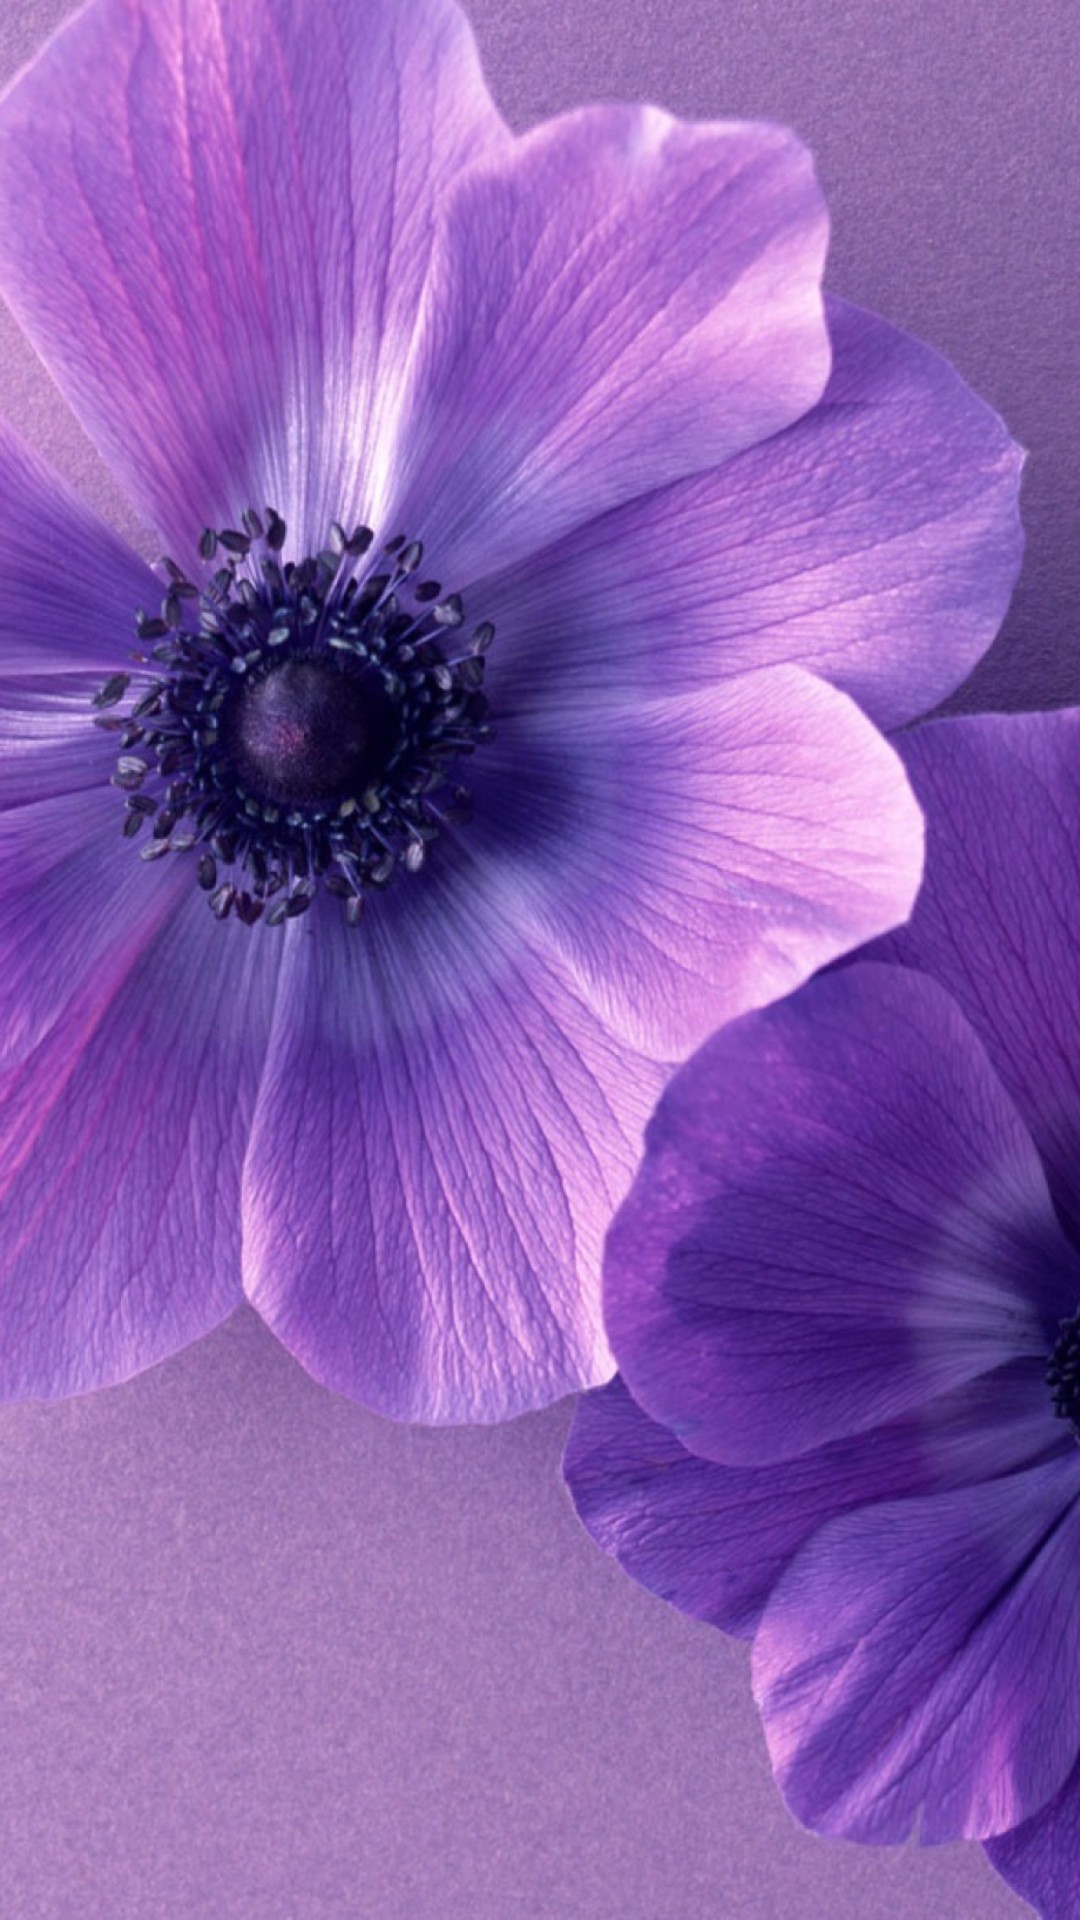 1080x1920 à¸à¸¥à¸à¸²à¸£à¸à¹à¸à¸«à¸²à¸£à¸¹à¸à¸ à¸²à¸à¸ªà¸³à¸«à¸£à¸±à¸ vertical hd wallpapers Â· Purple And BlueThe Color ...